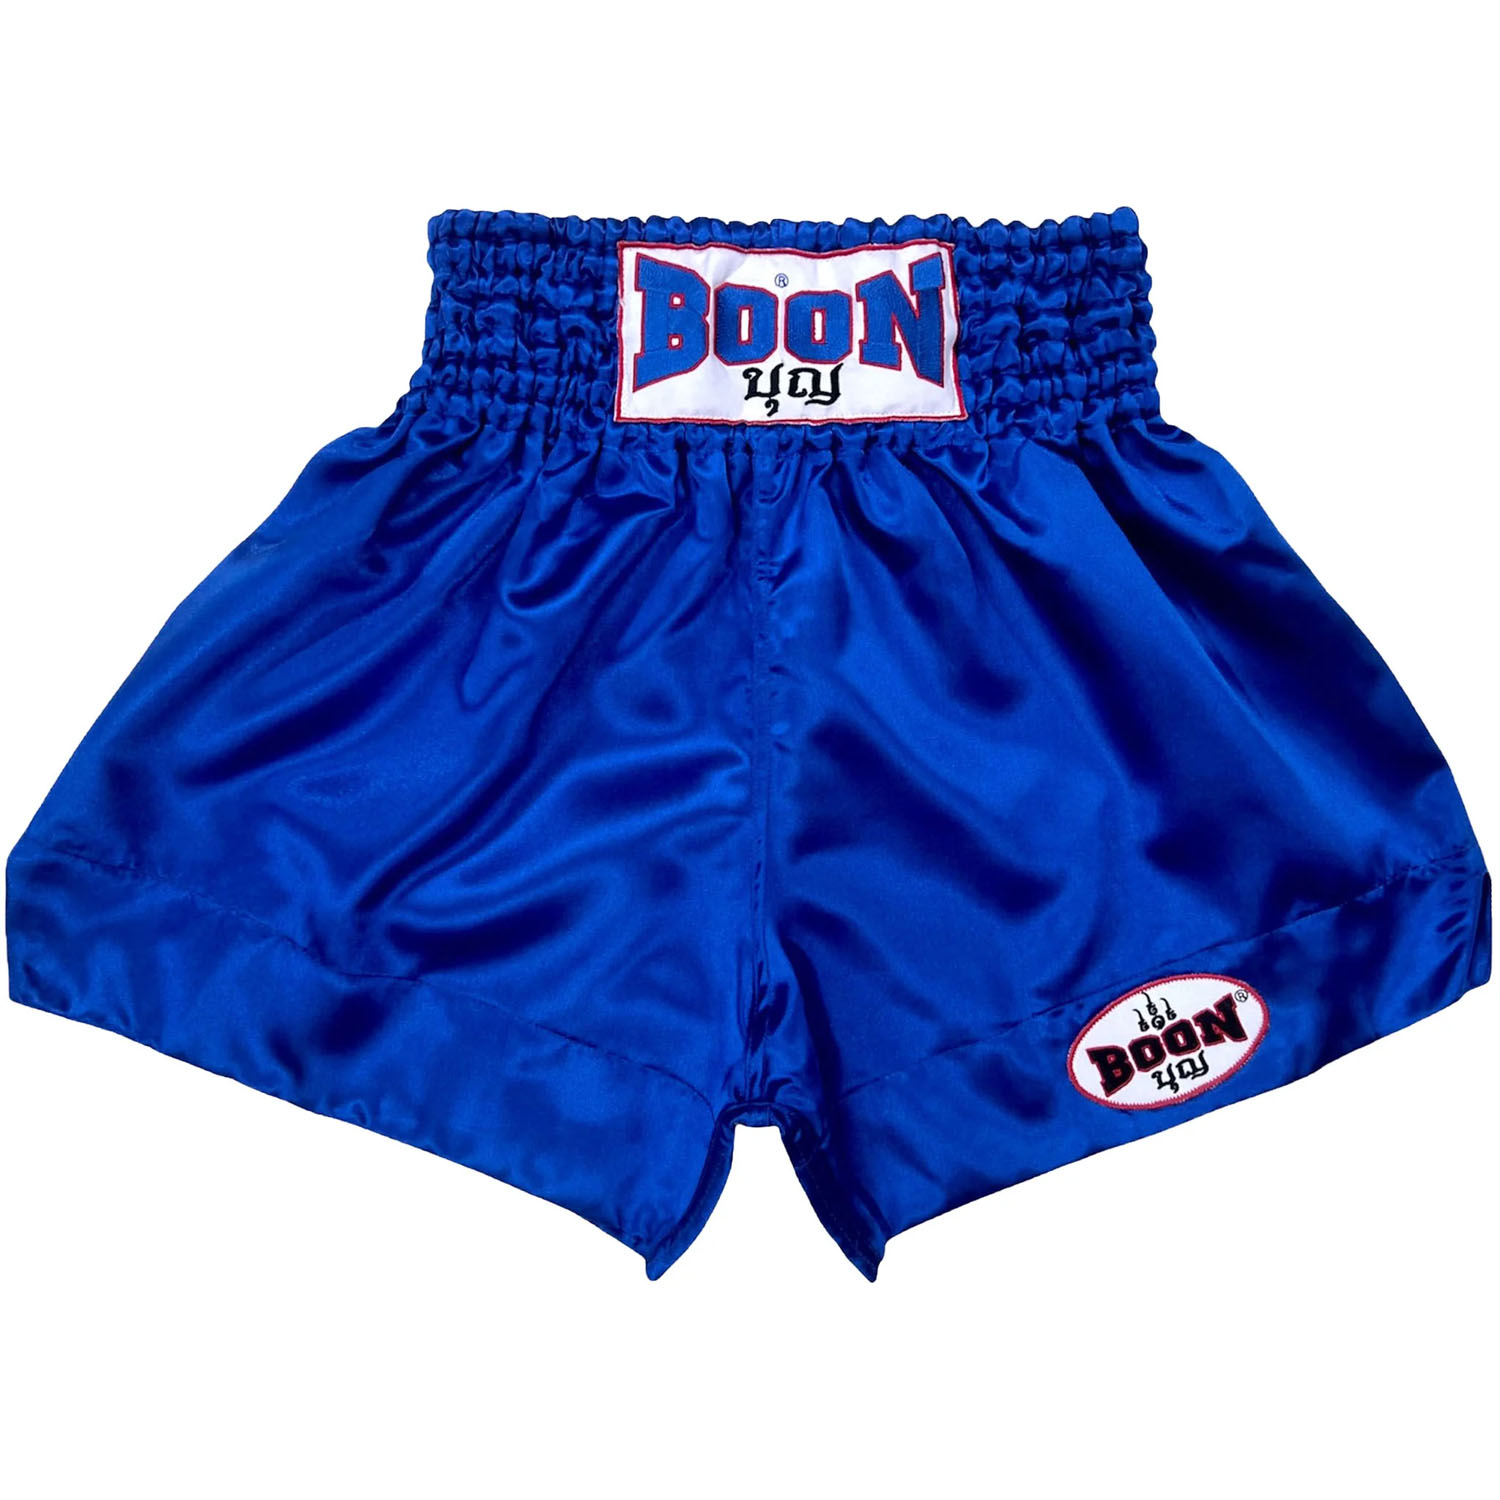 BOON Muay Thai Shorts, MT01, Plain, blue, XL